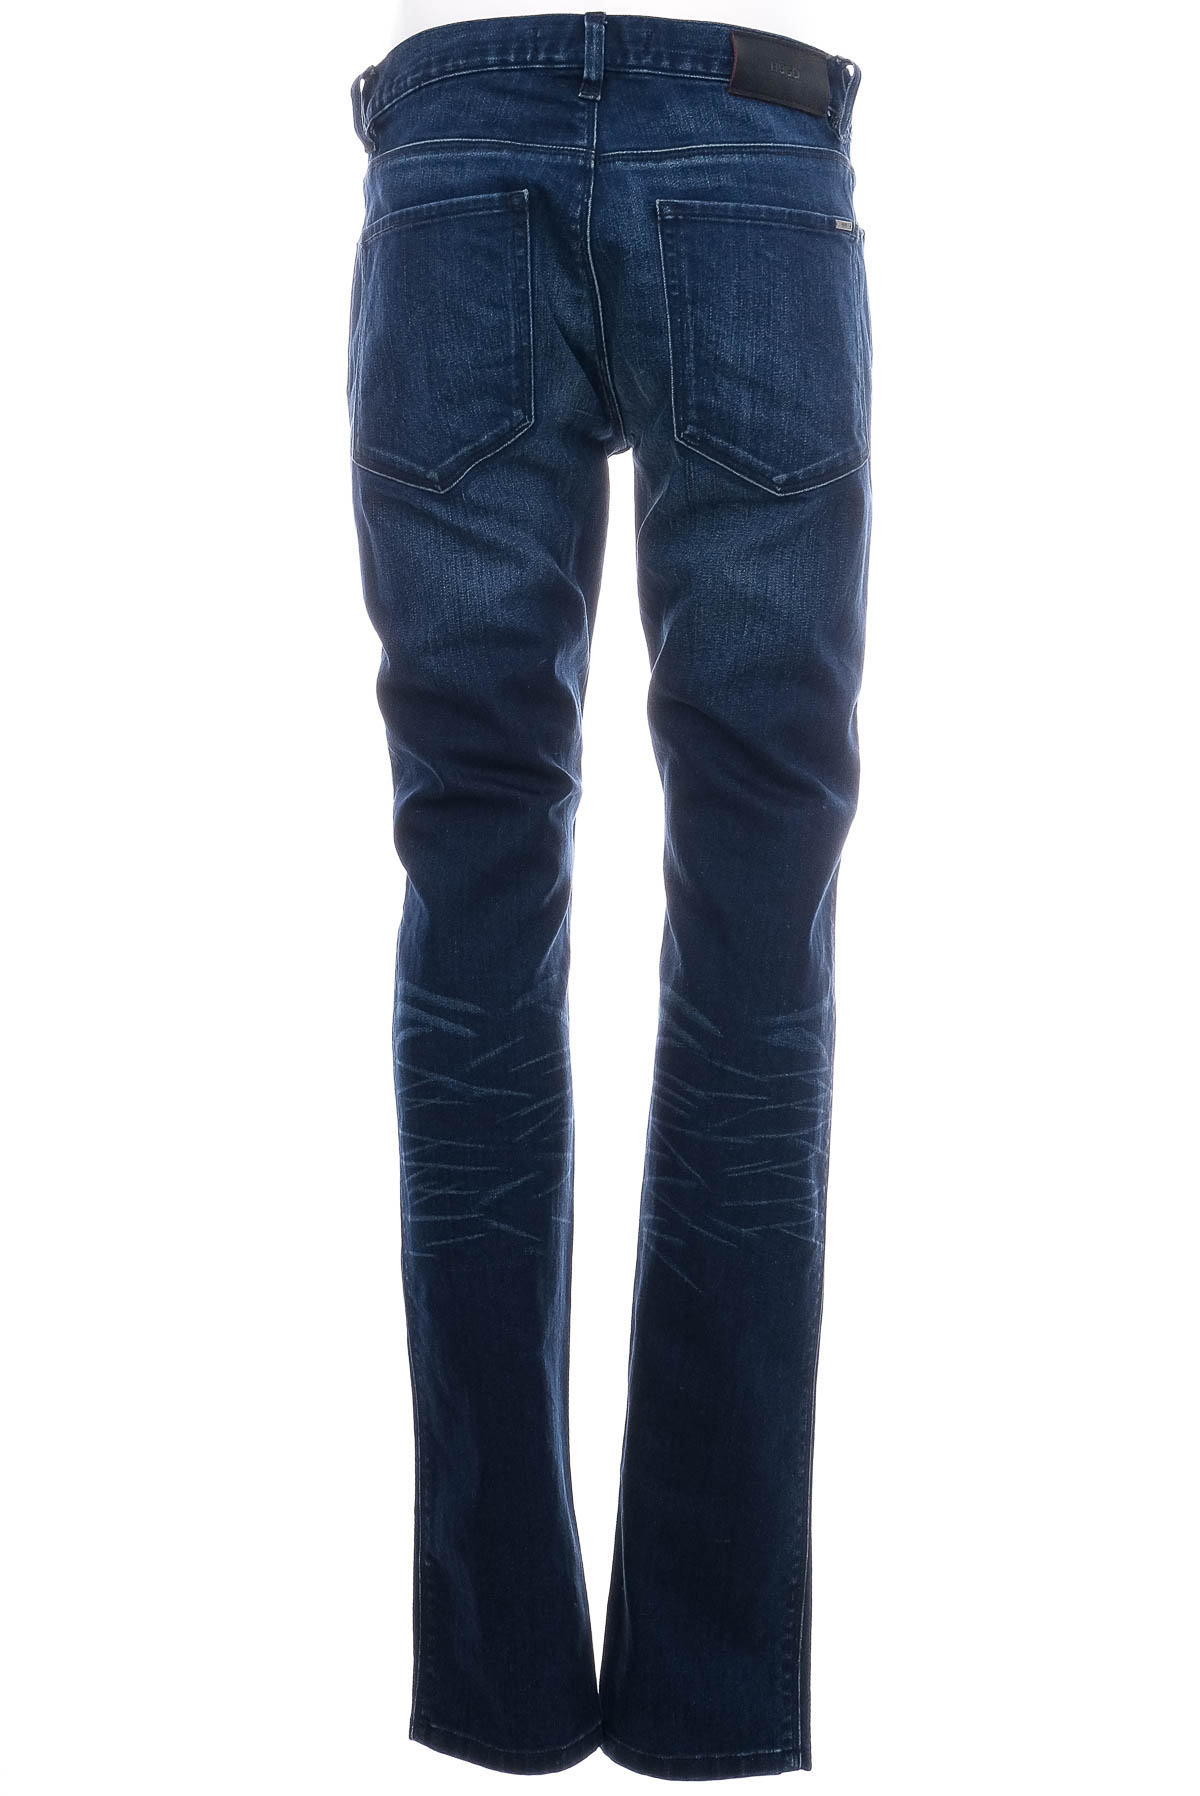 Jeans pentru bărbăți - HUGO BOSS - 1